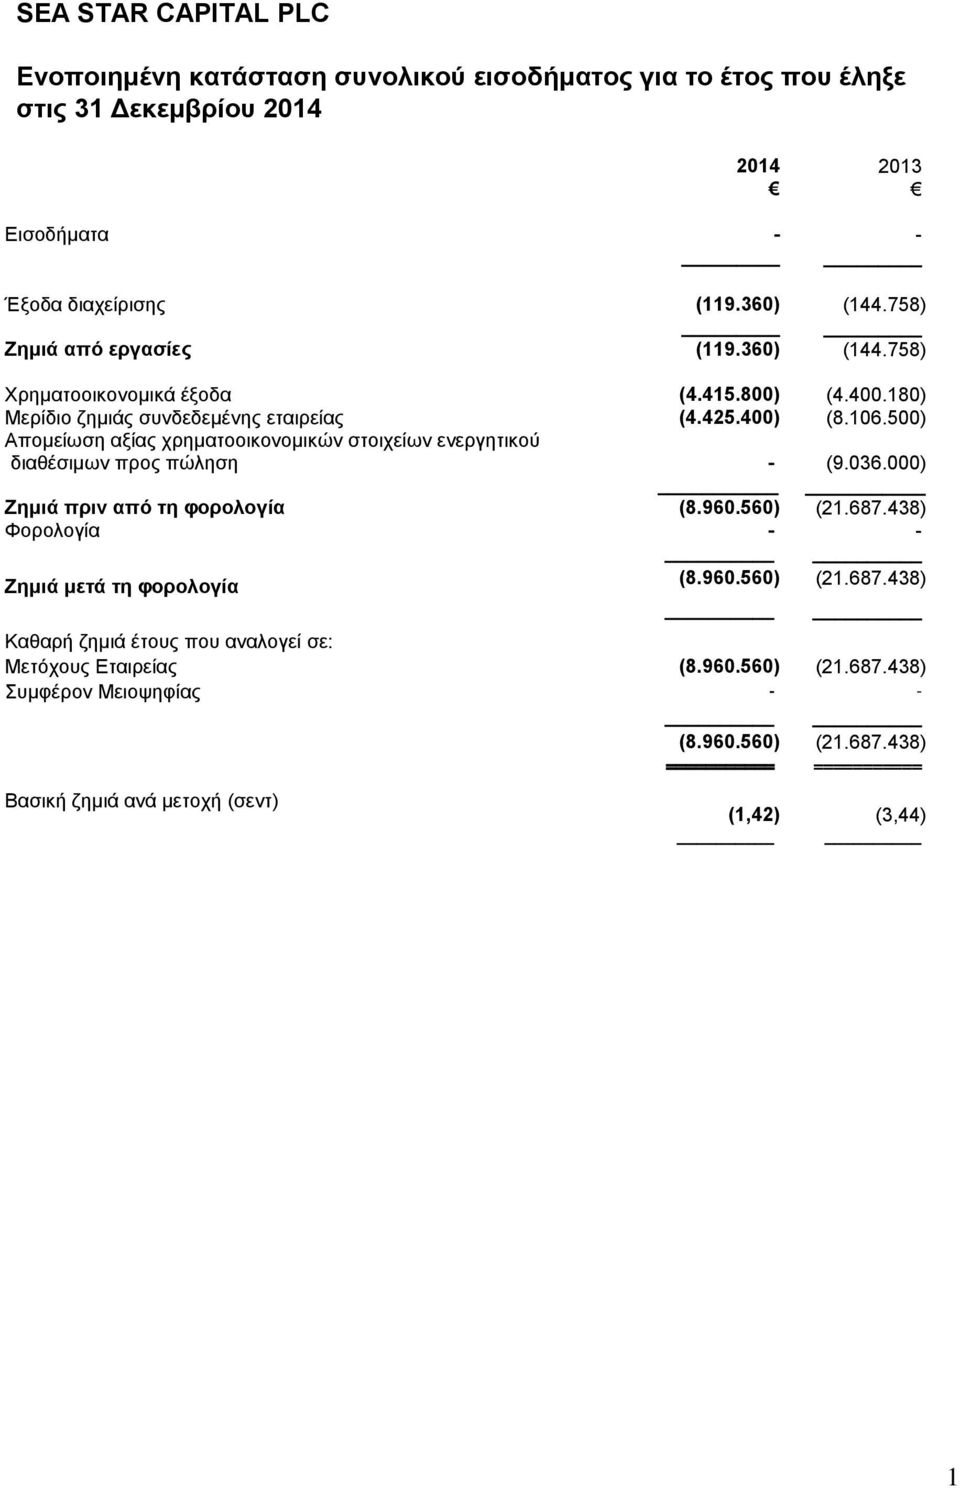 500) Απομείωση αξίας χρηματοοικονομικών στοιχείων ενεργητικού διαθέσιμων προς πώληση - (9.036.000) Ζημιά πριν από τη φορολογία (8.960.560) (21.687.